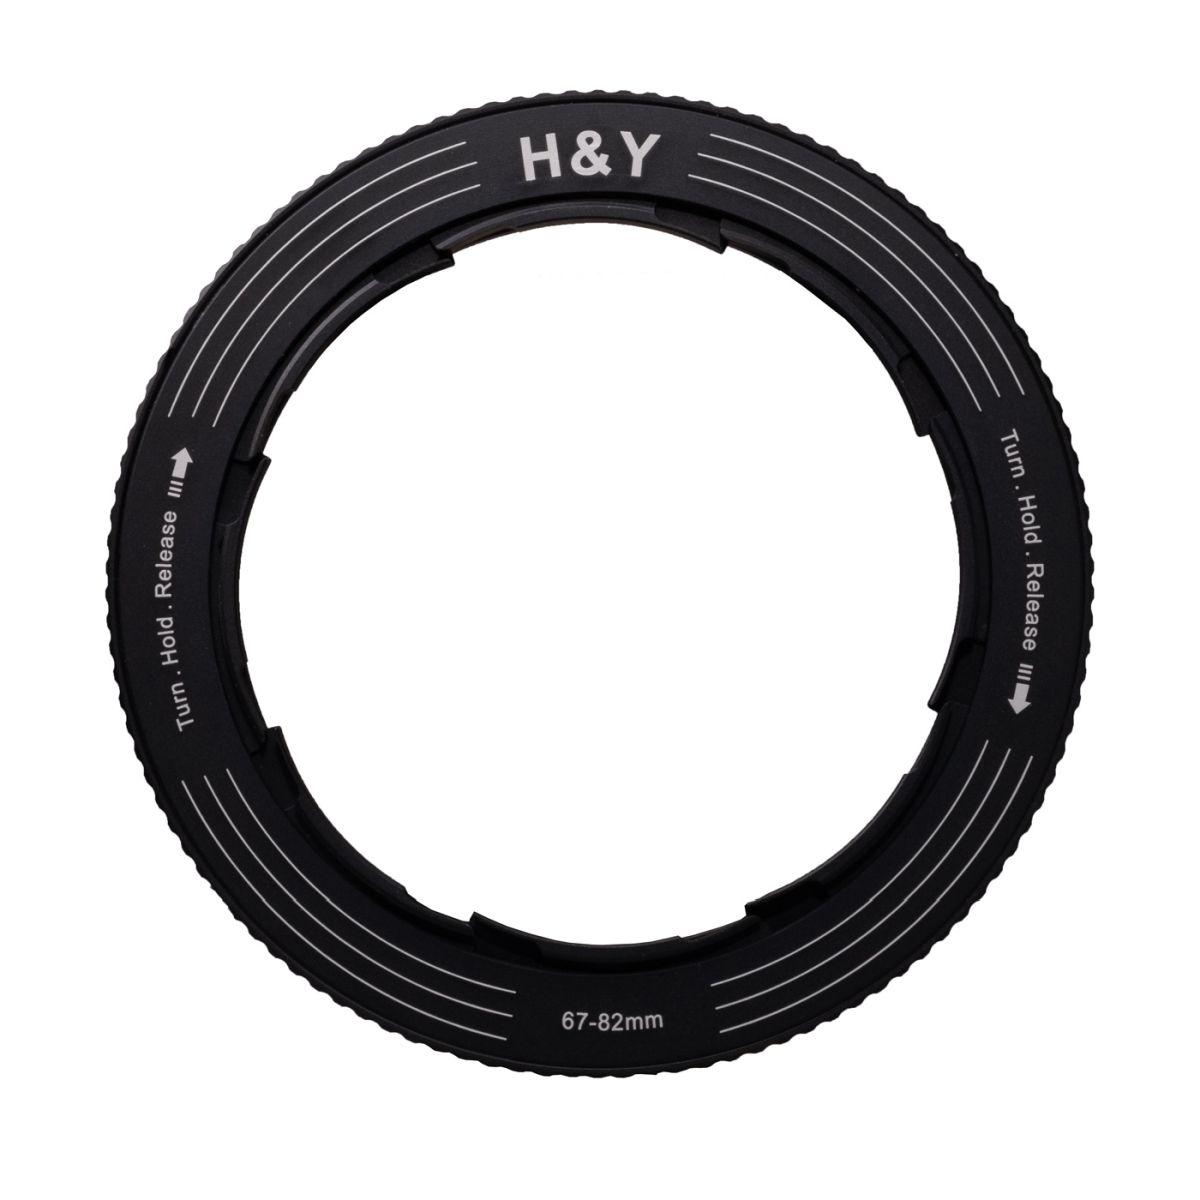 H&Y REVORING 67-82 mm Filteradapter für 82 mm Filter